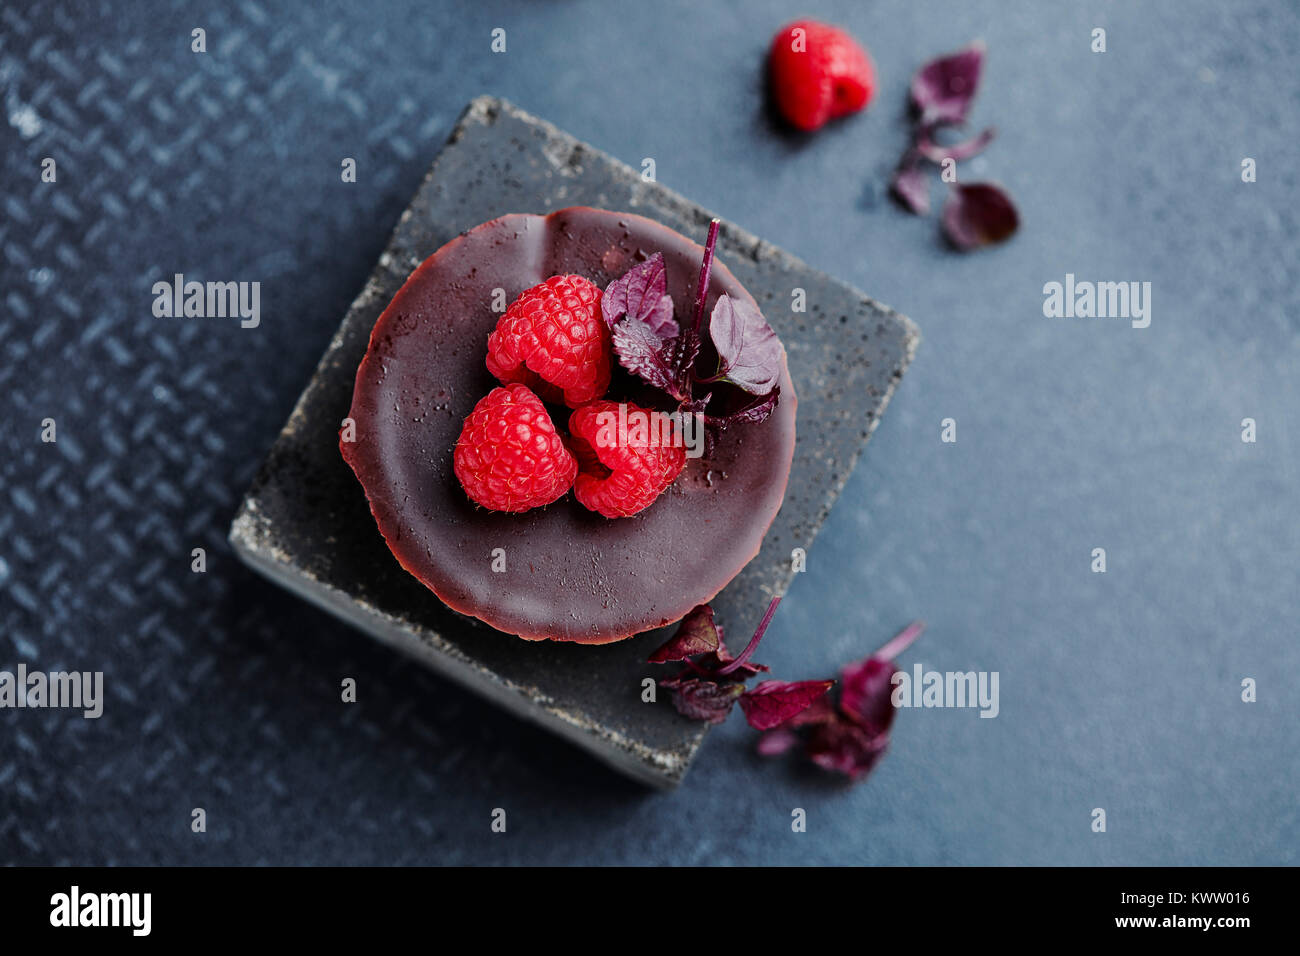 Torta al cioccolato con lamponi freschi Foto Stock